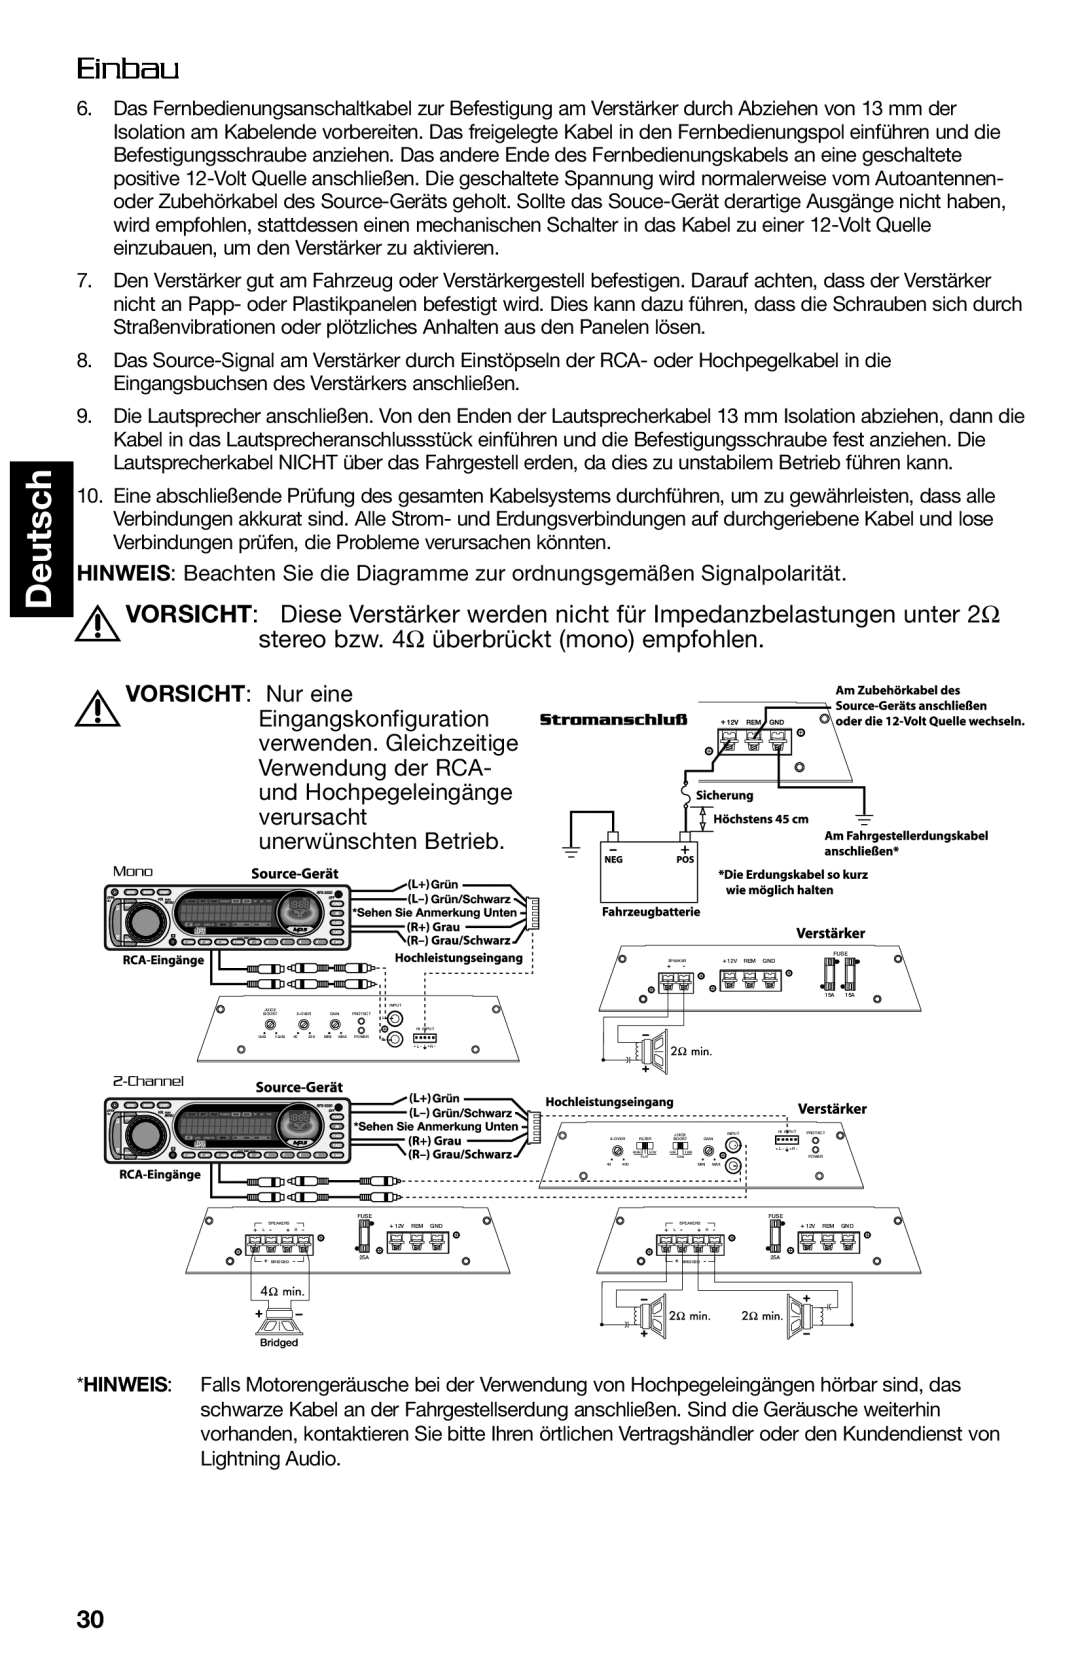 Lightning Audio FF250.1, FF150.2 manual Deutsch, Einbau, VORSICHT Nur eine 